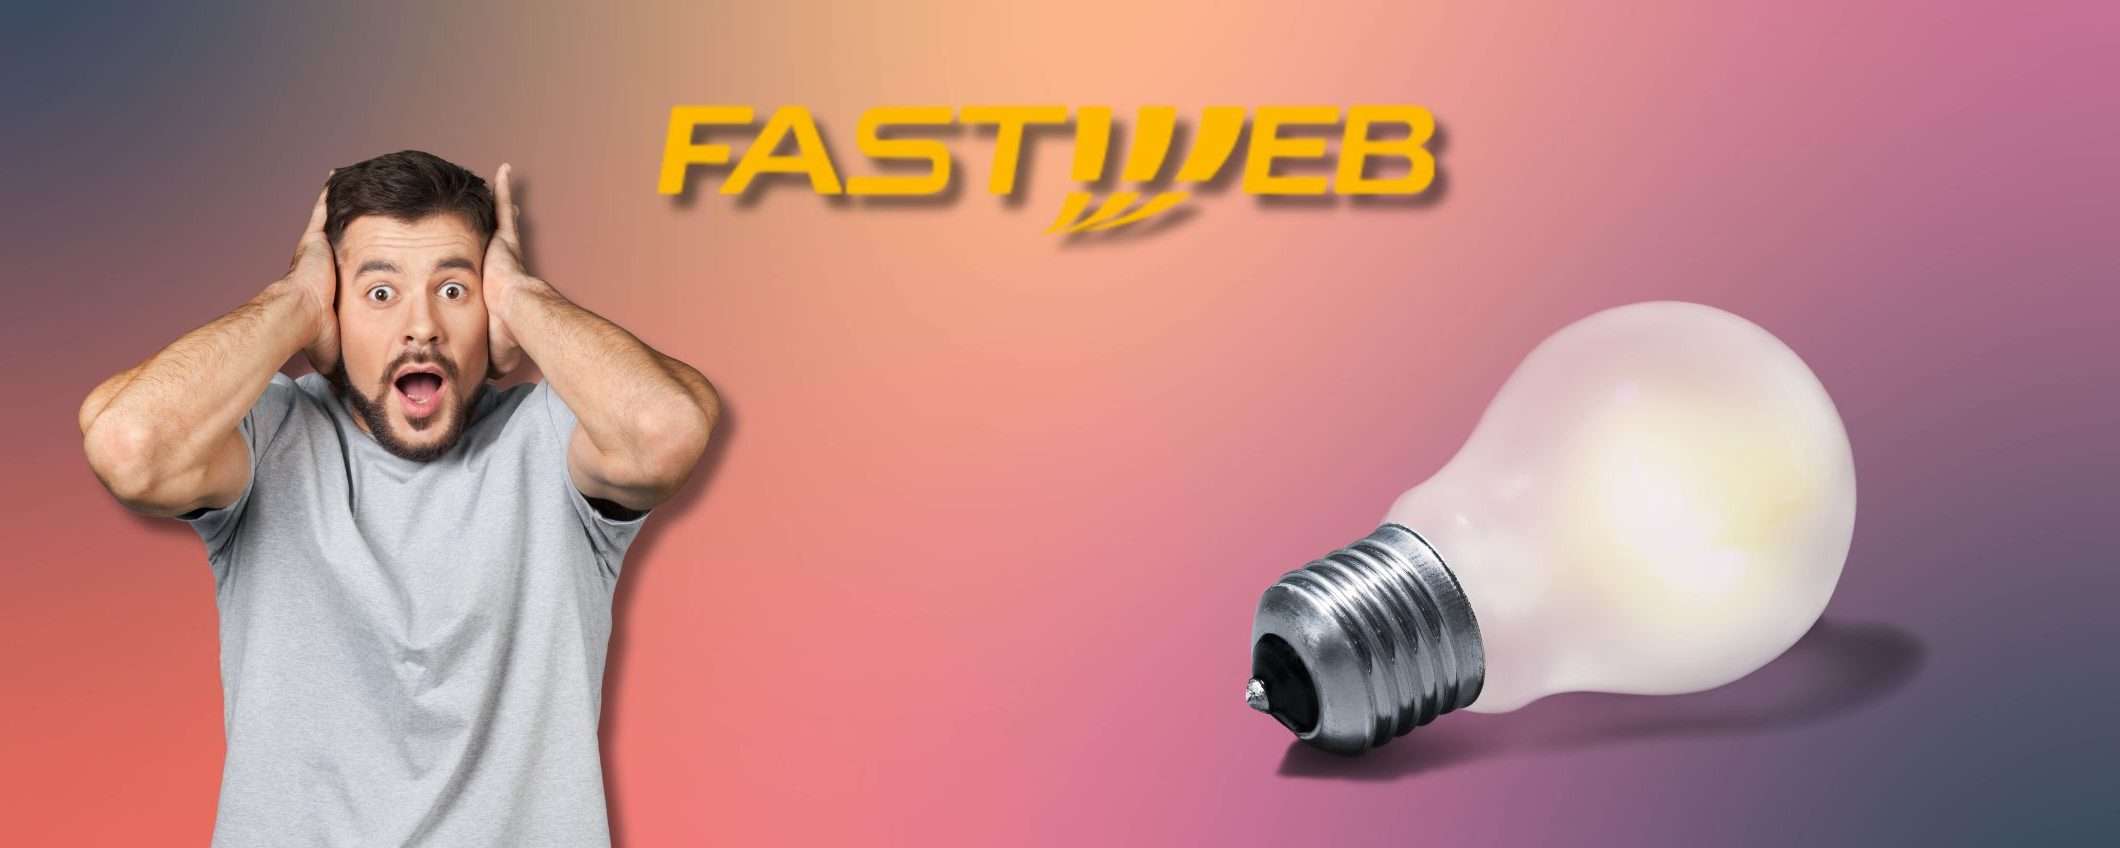 Fastweb Energia: attivalo ora, a partire da 45€ con CANONE BLOCCATO